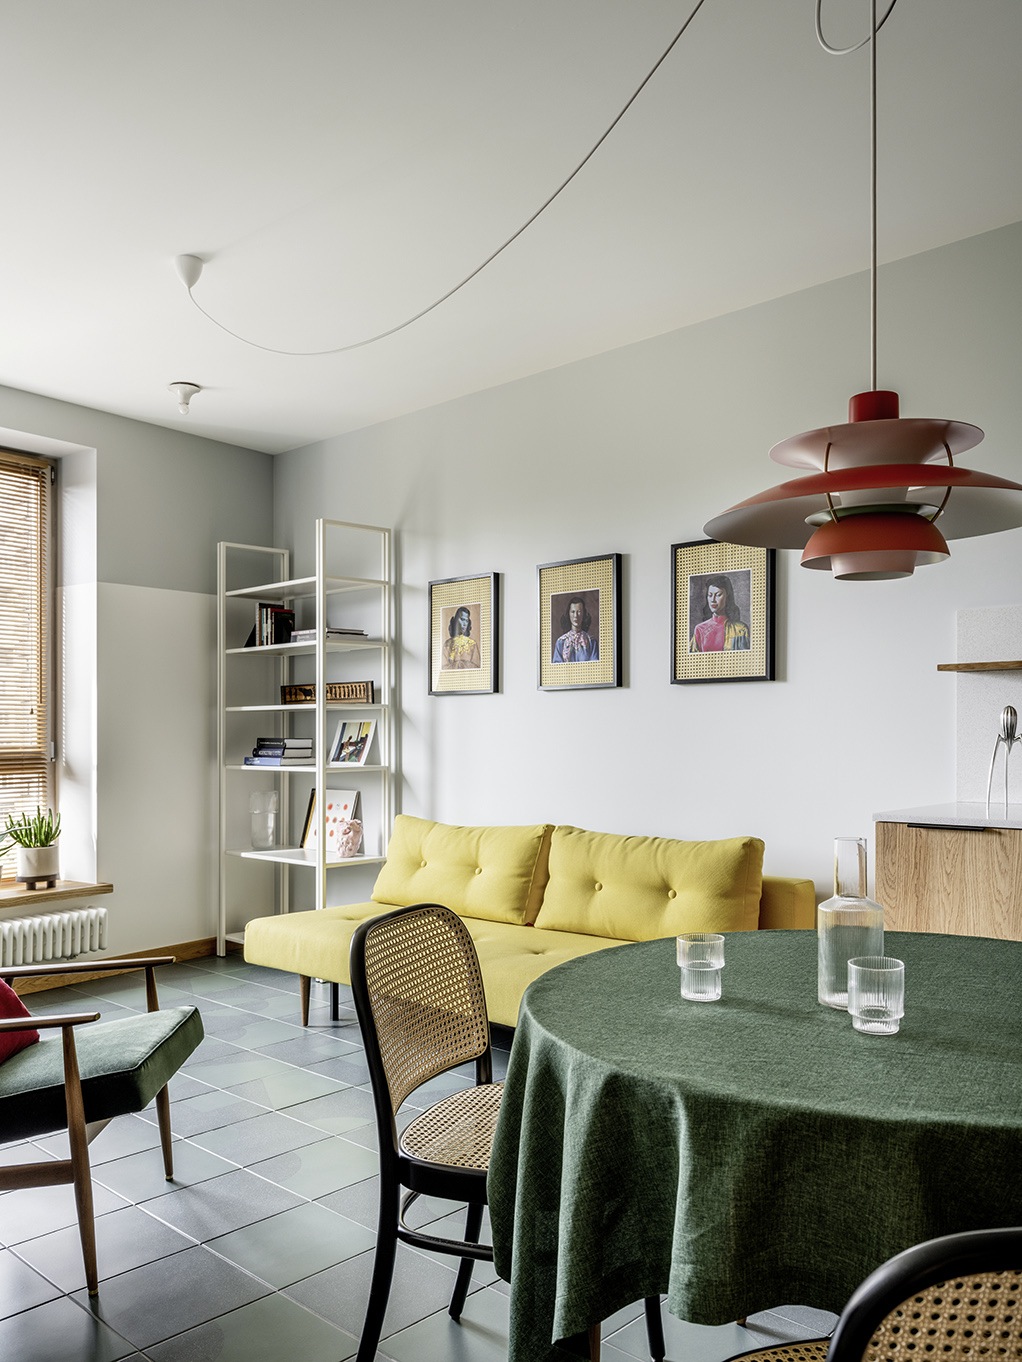 Để phân vùng phòng khách và phòng ăn trong bố cục thiết kế mở, NTK nội thất đã lựa chọn vải bọc màu vàng tươi cho ghế sofa và khăn trải bàn ăn màu xanh lá cây đậm, giúp phân vùng không gian hiệu quả bằng thị giác.